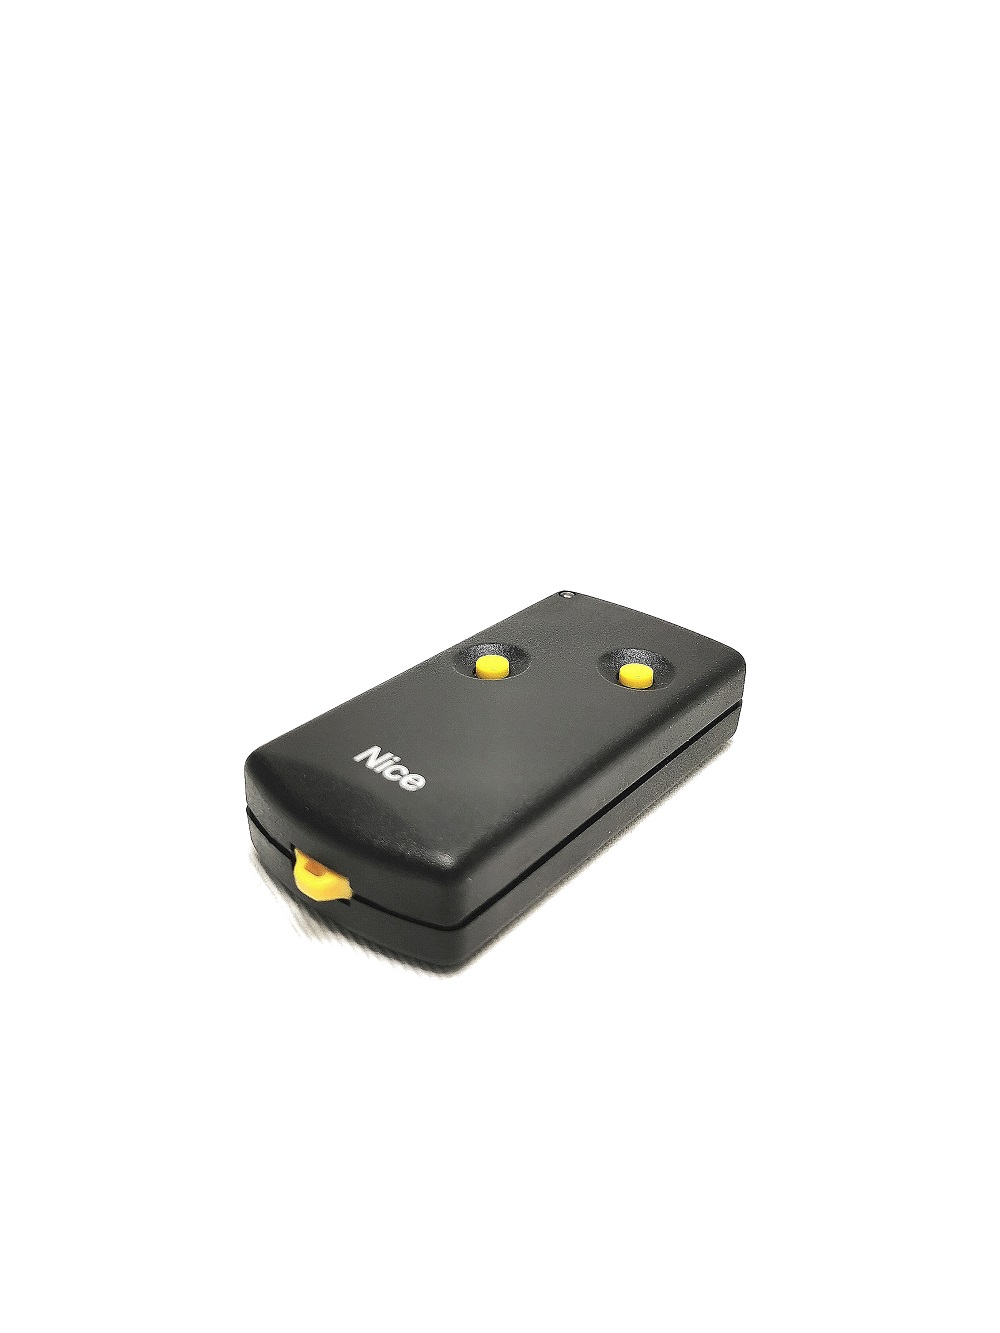 Télécommande Nice easy K2M - 2 boutons jaunes - fréquence 30,875Mhz à switch - Télécommande originale NICE à code tournant facilement programmable